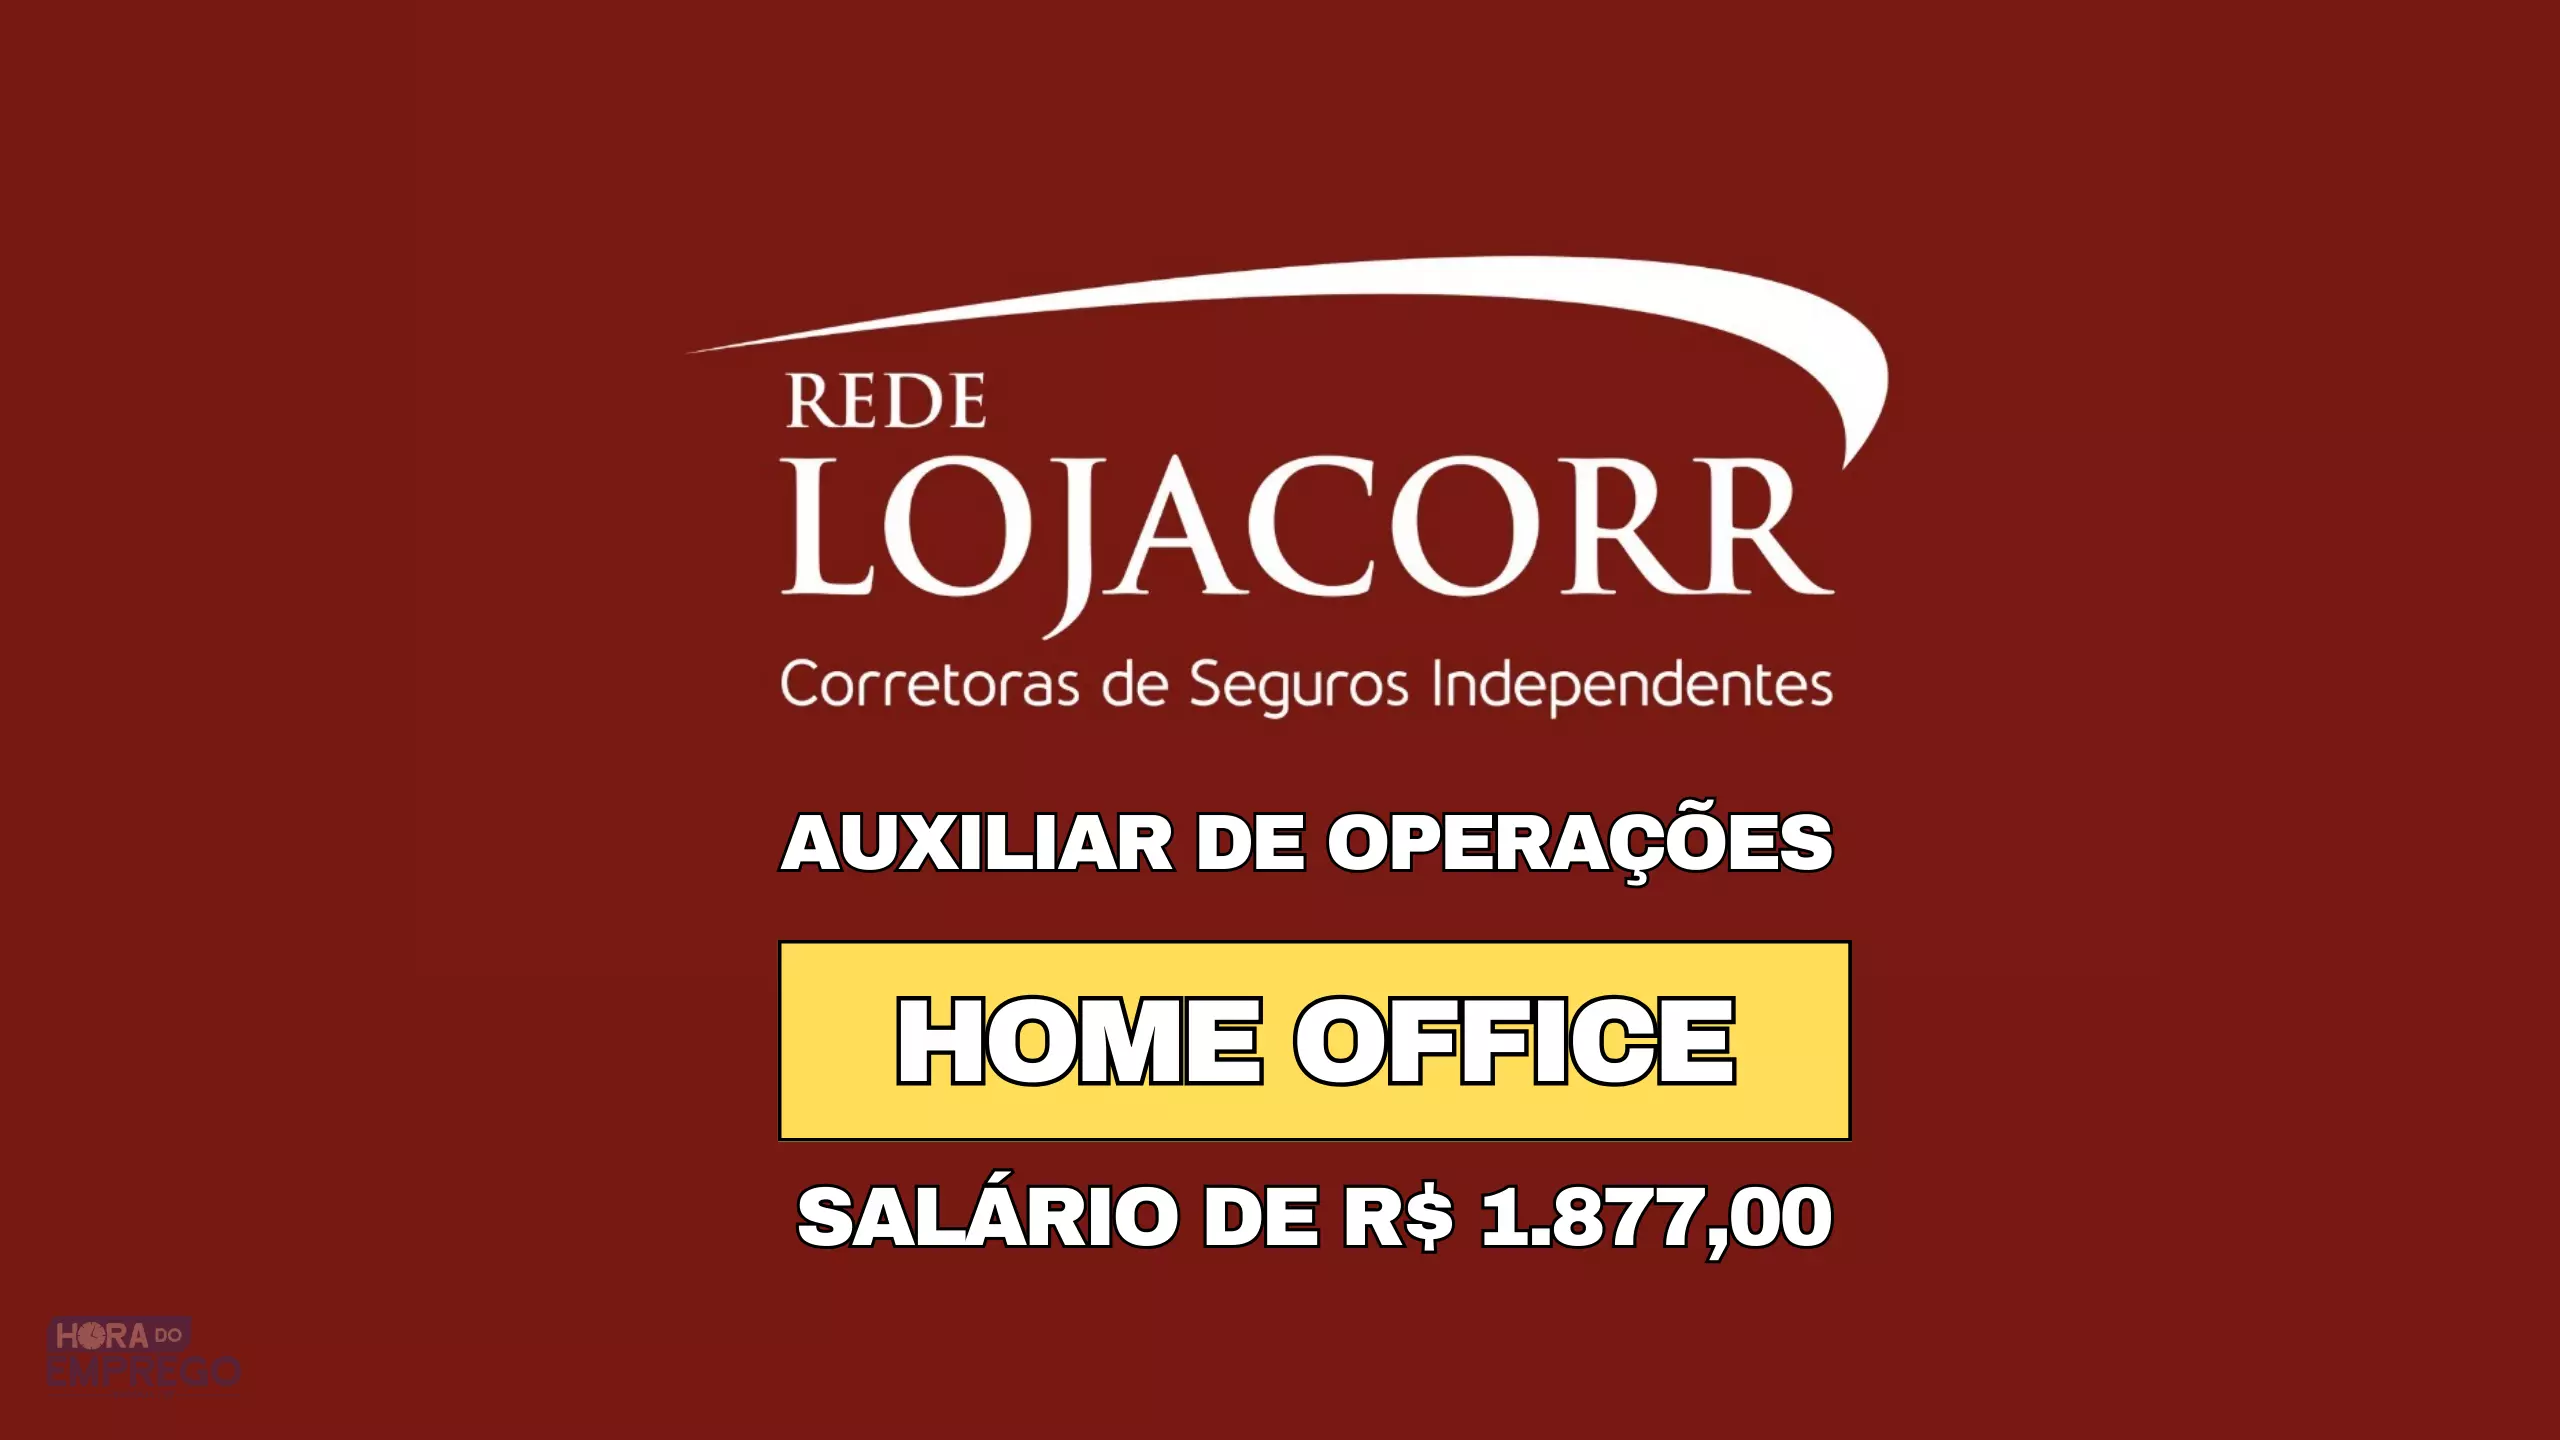 Lojacorr abre vaga 100% HOME OFFICE para Auxiliar de Operações com salário de R$ 1.877,00